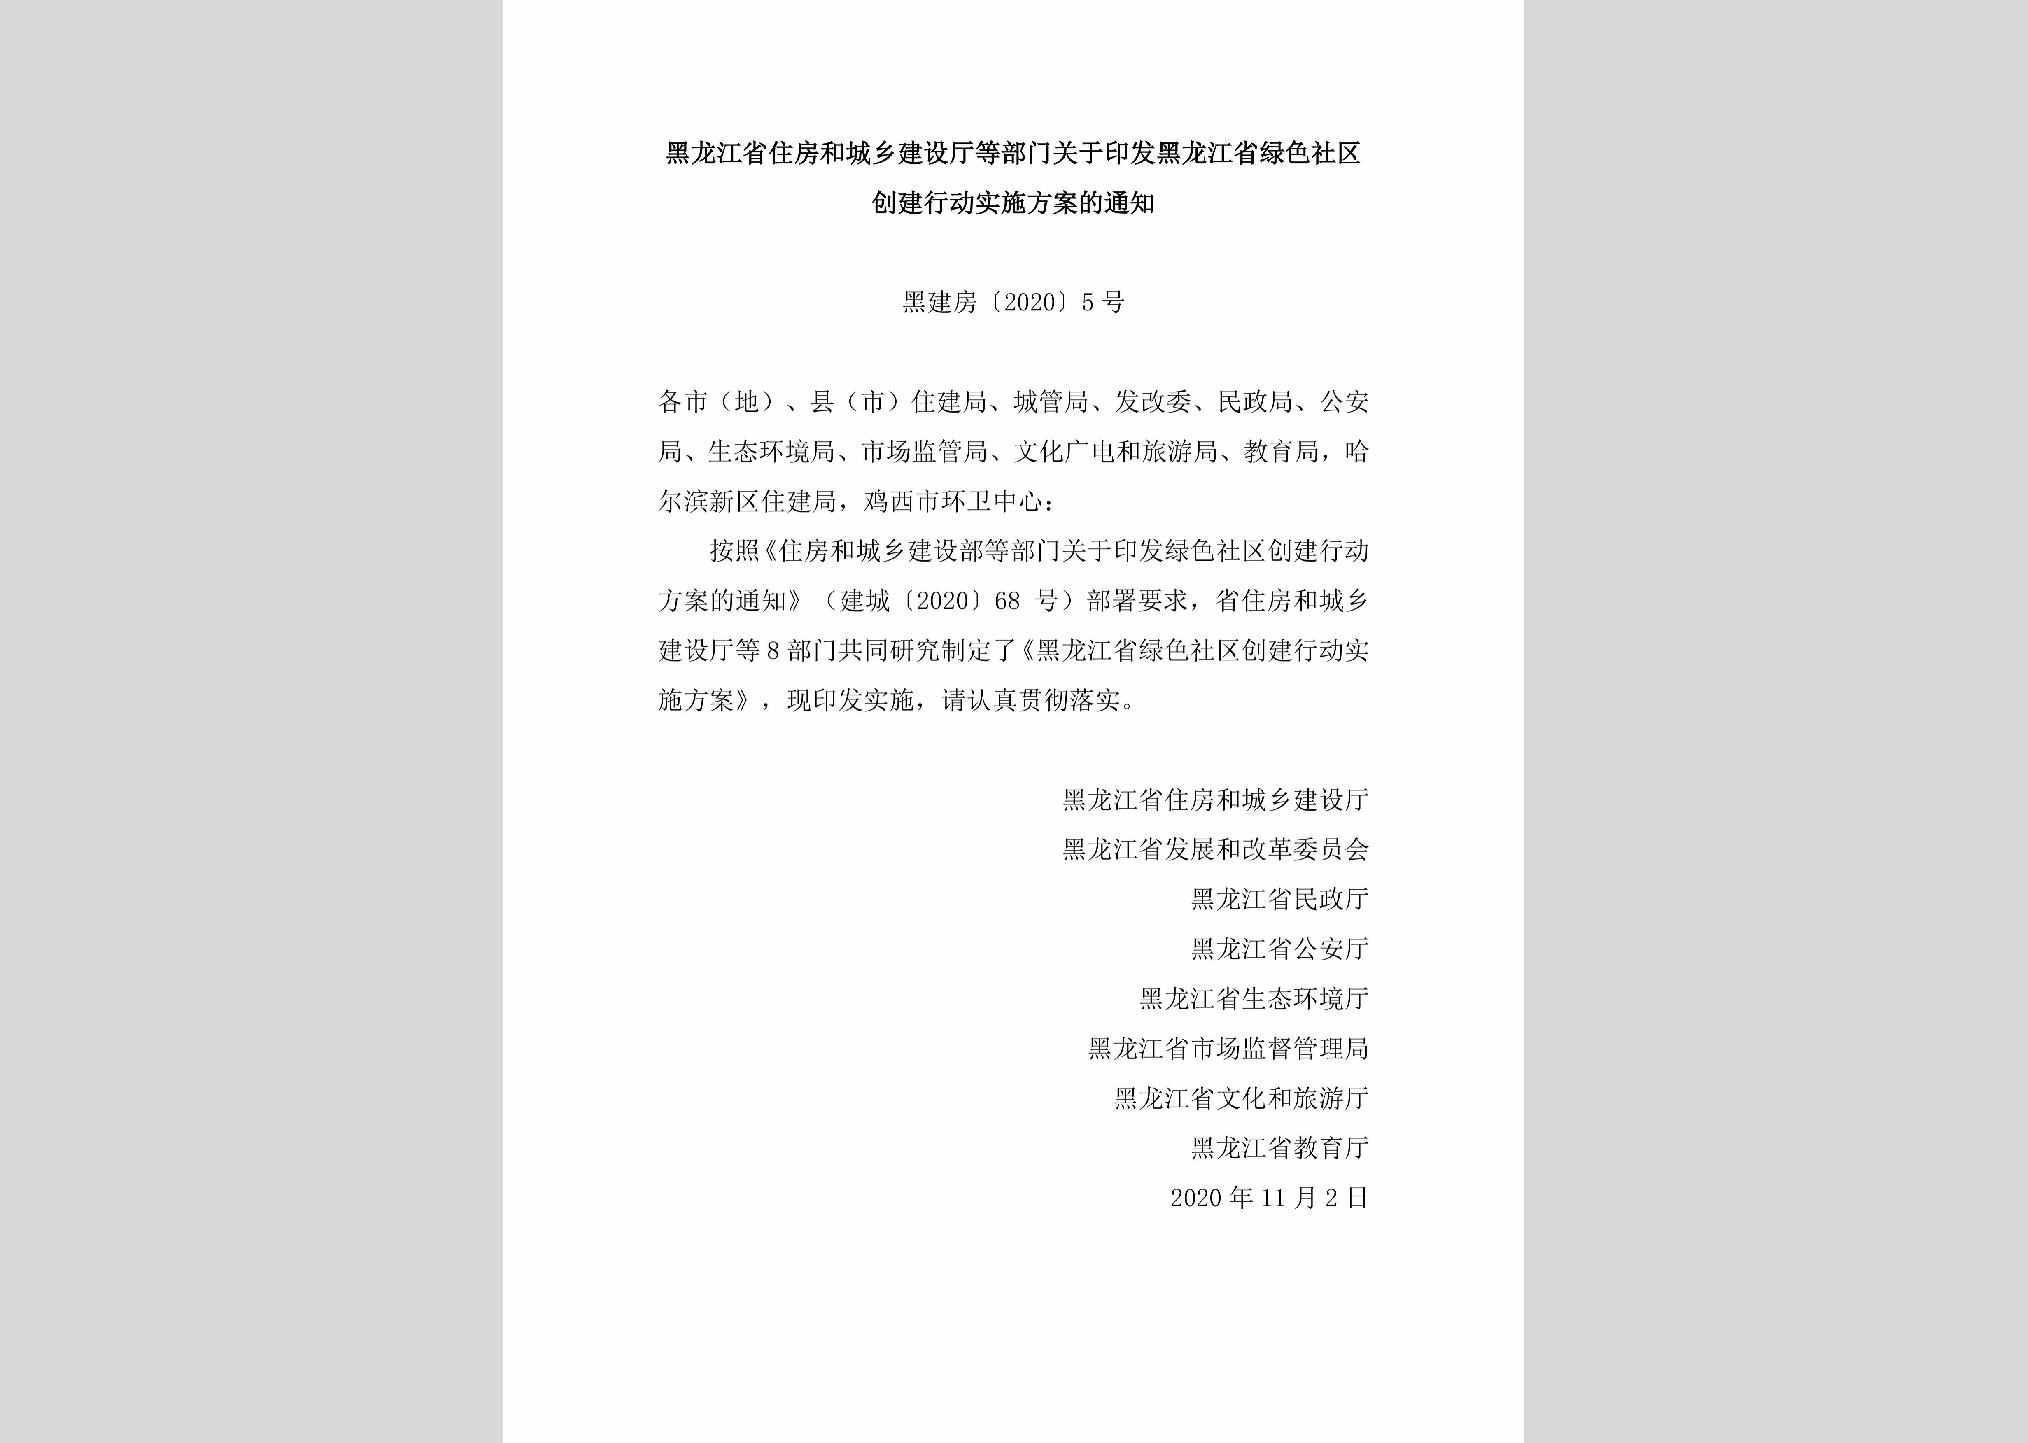 黑建房[2020]5号：黑龙江省住房和城乡建设厅等部门关于印发黑龙江省绿色社区创建行动实施方案的通知